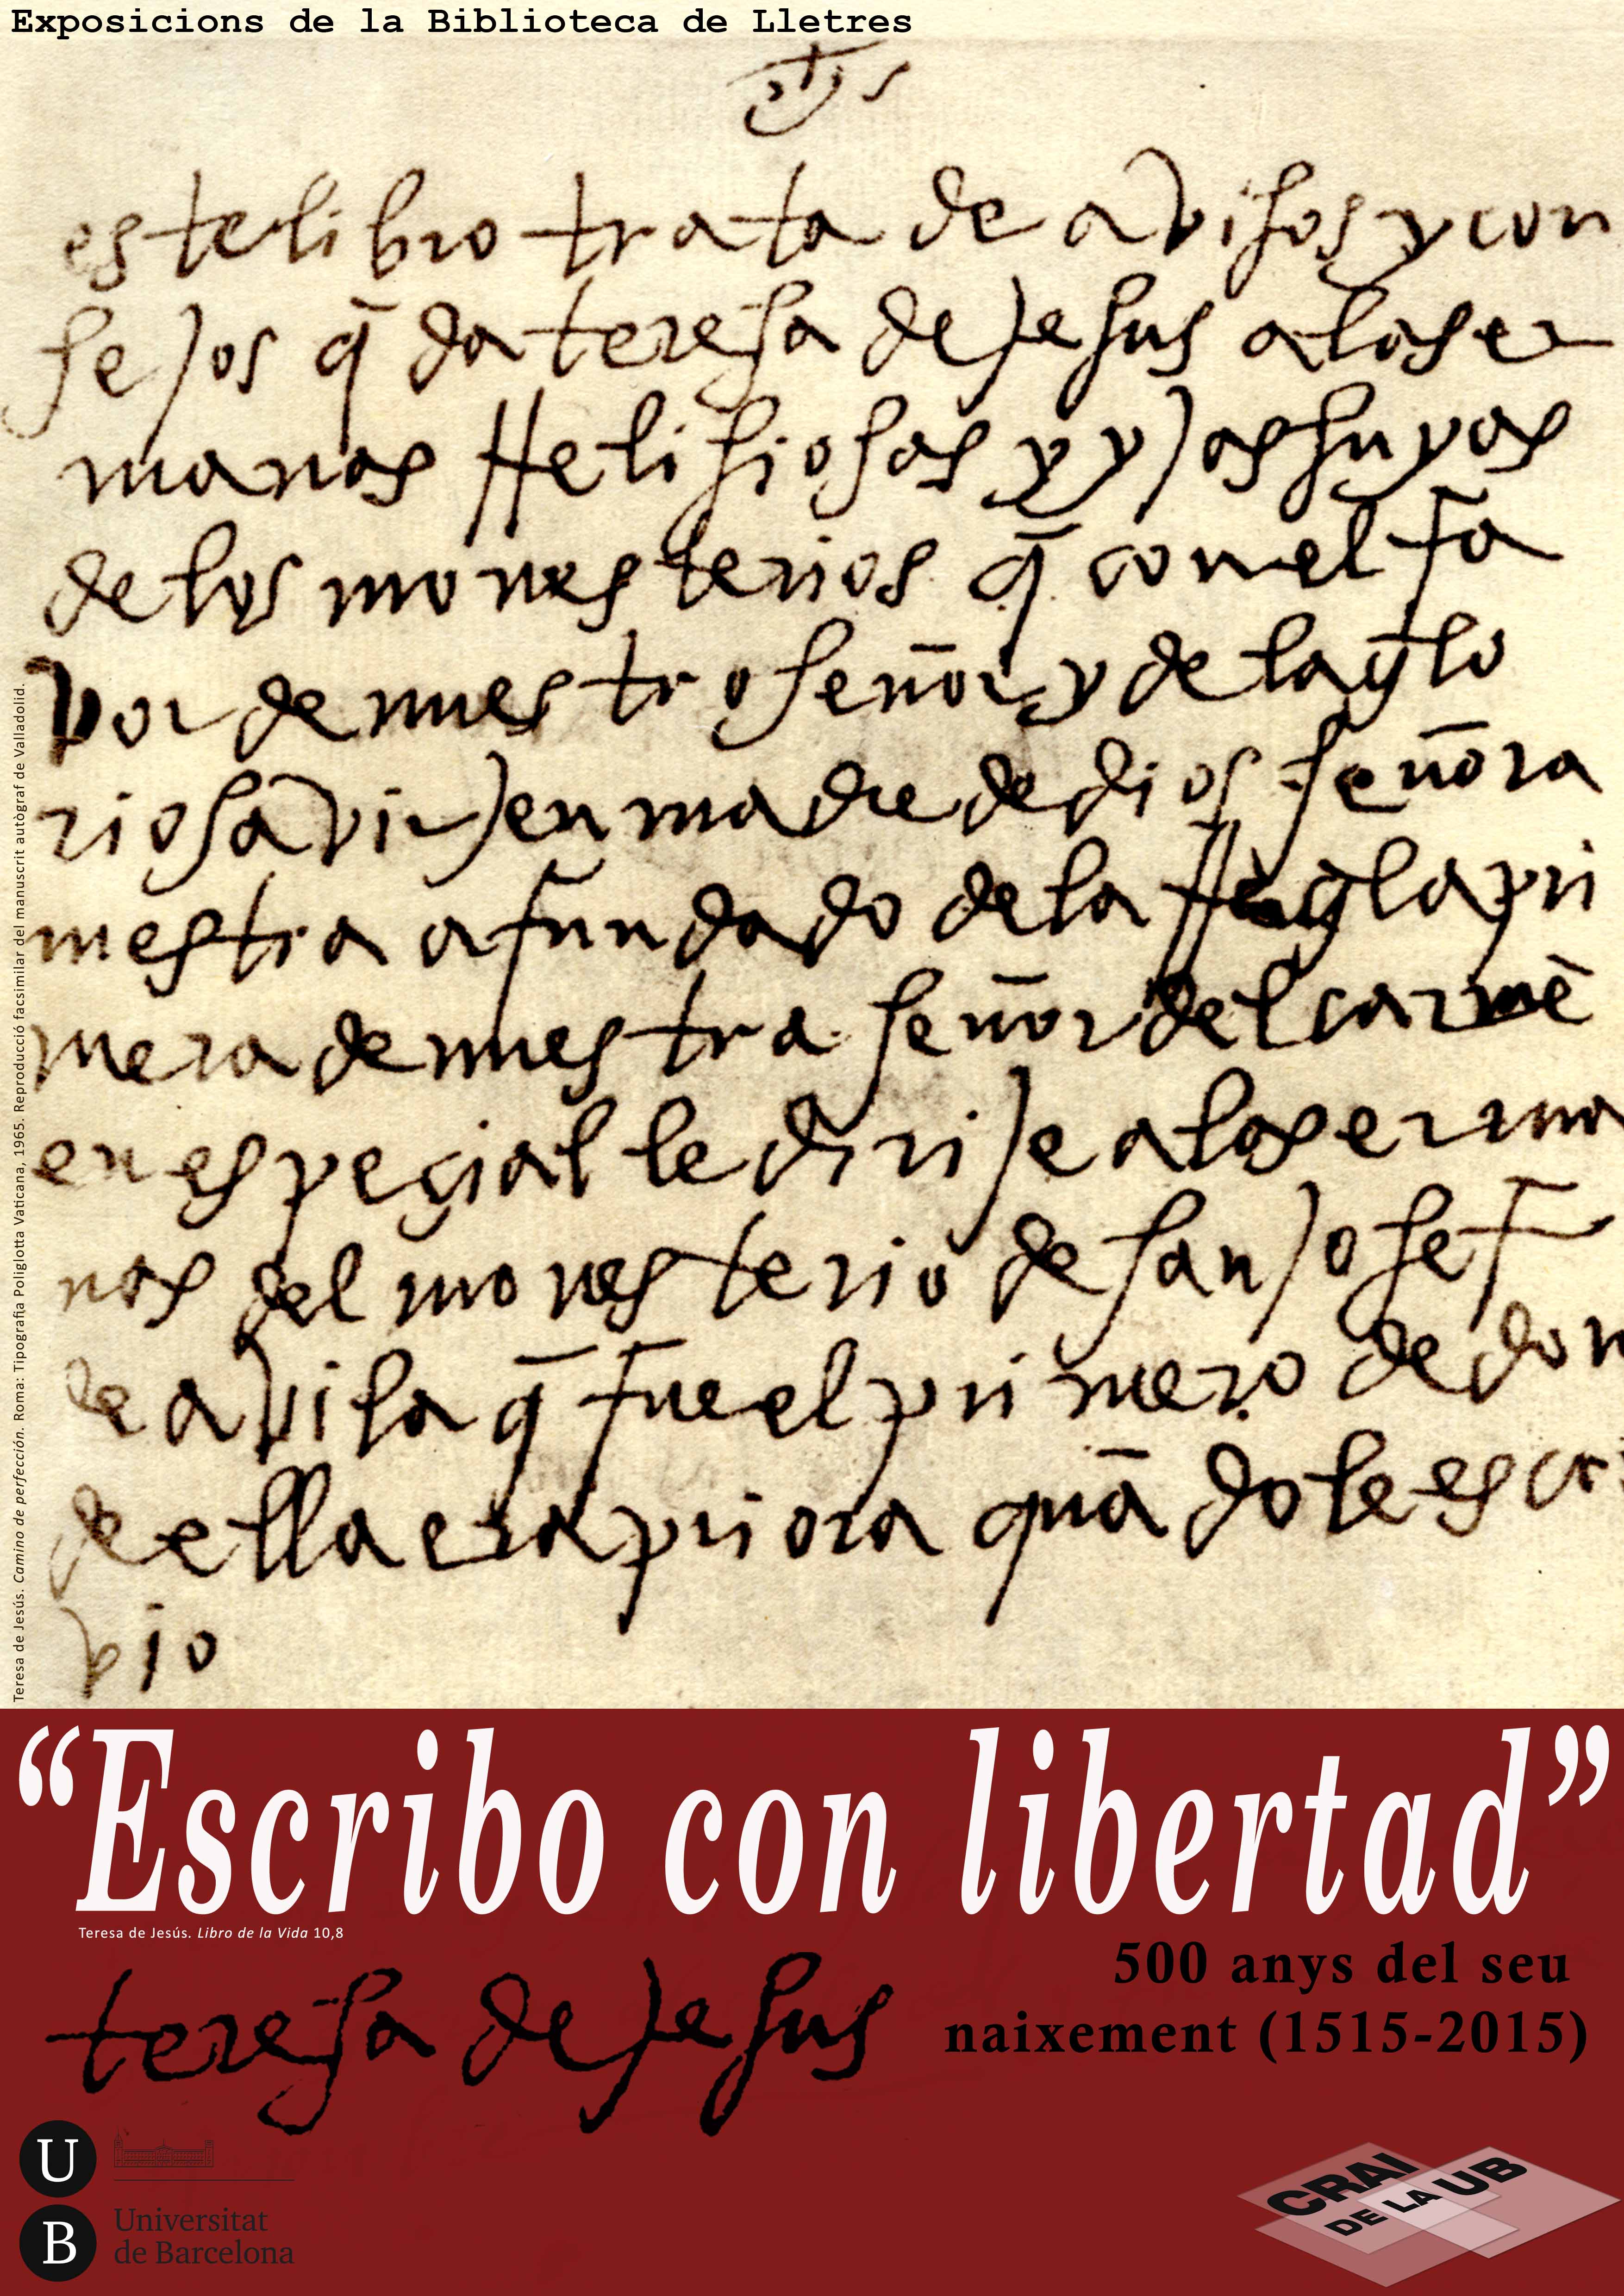 "Escribo con libertad", conmemoración de los 500 años del nacimiento de Teresa de Jesús